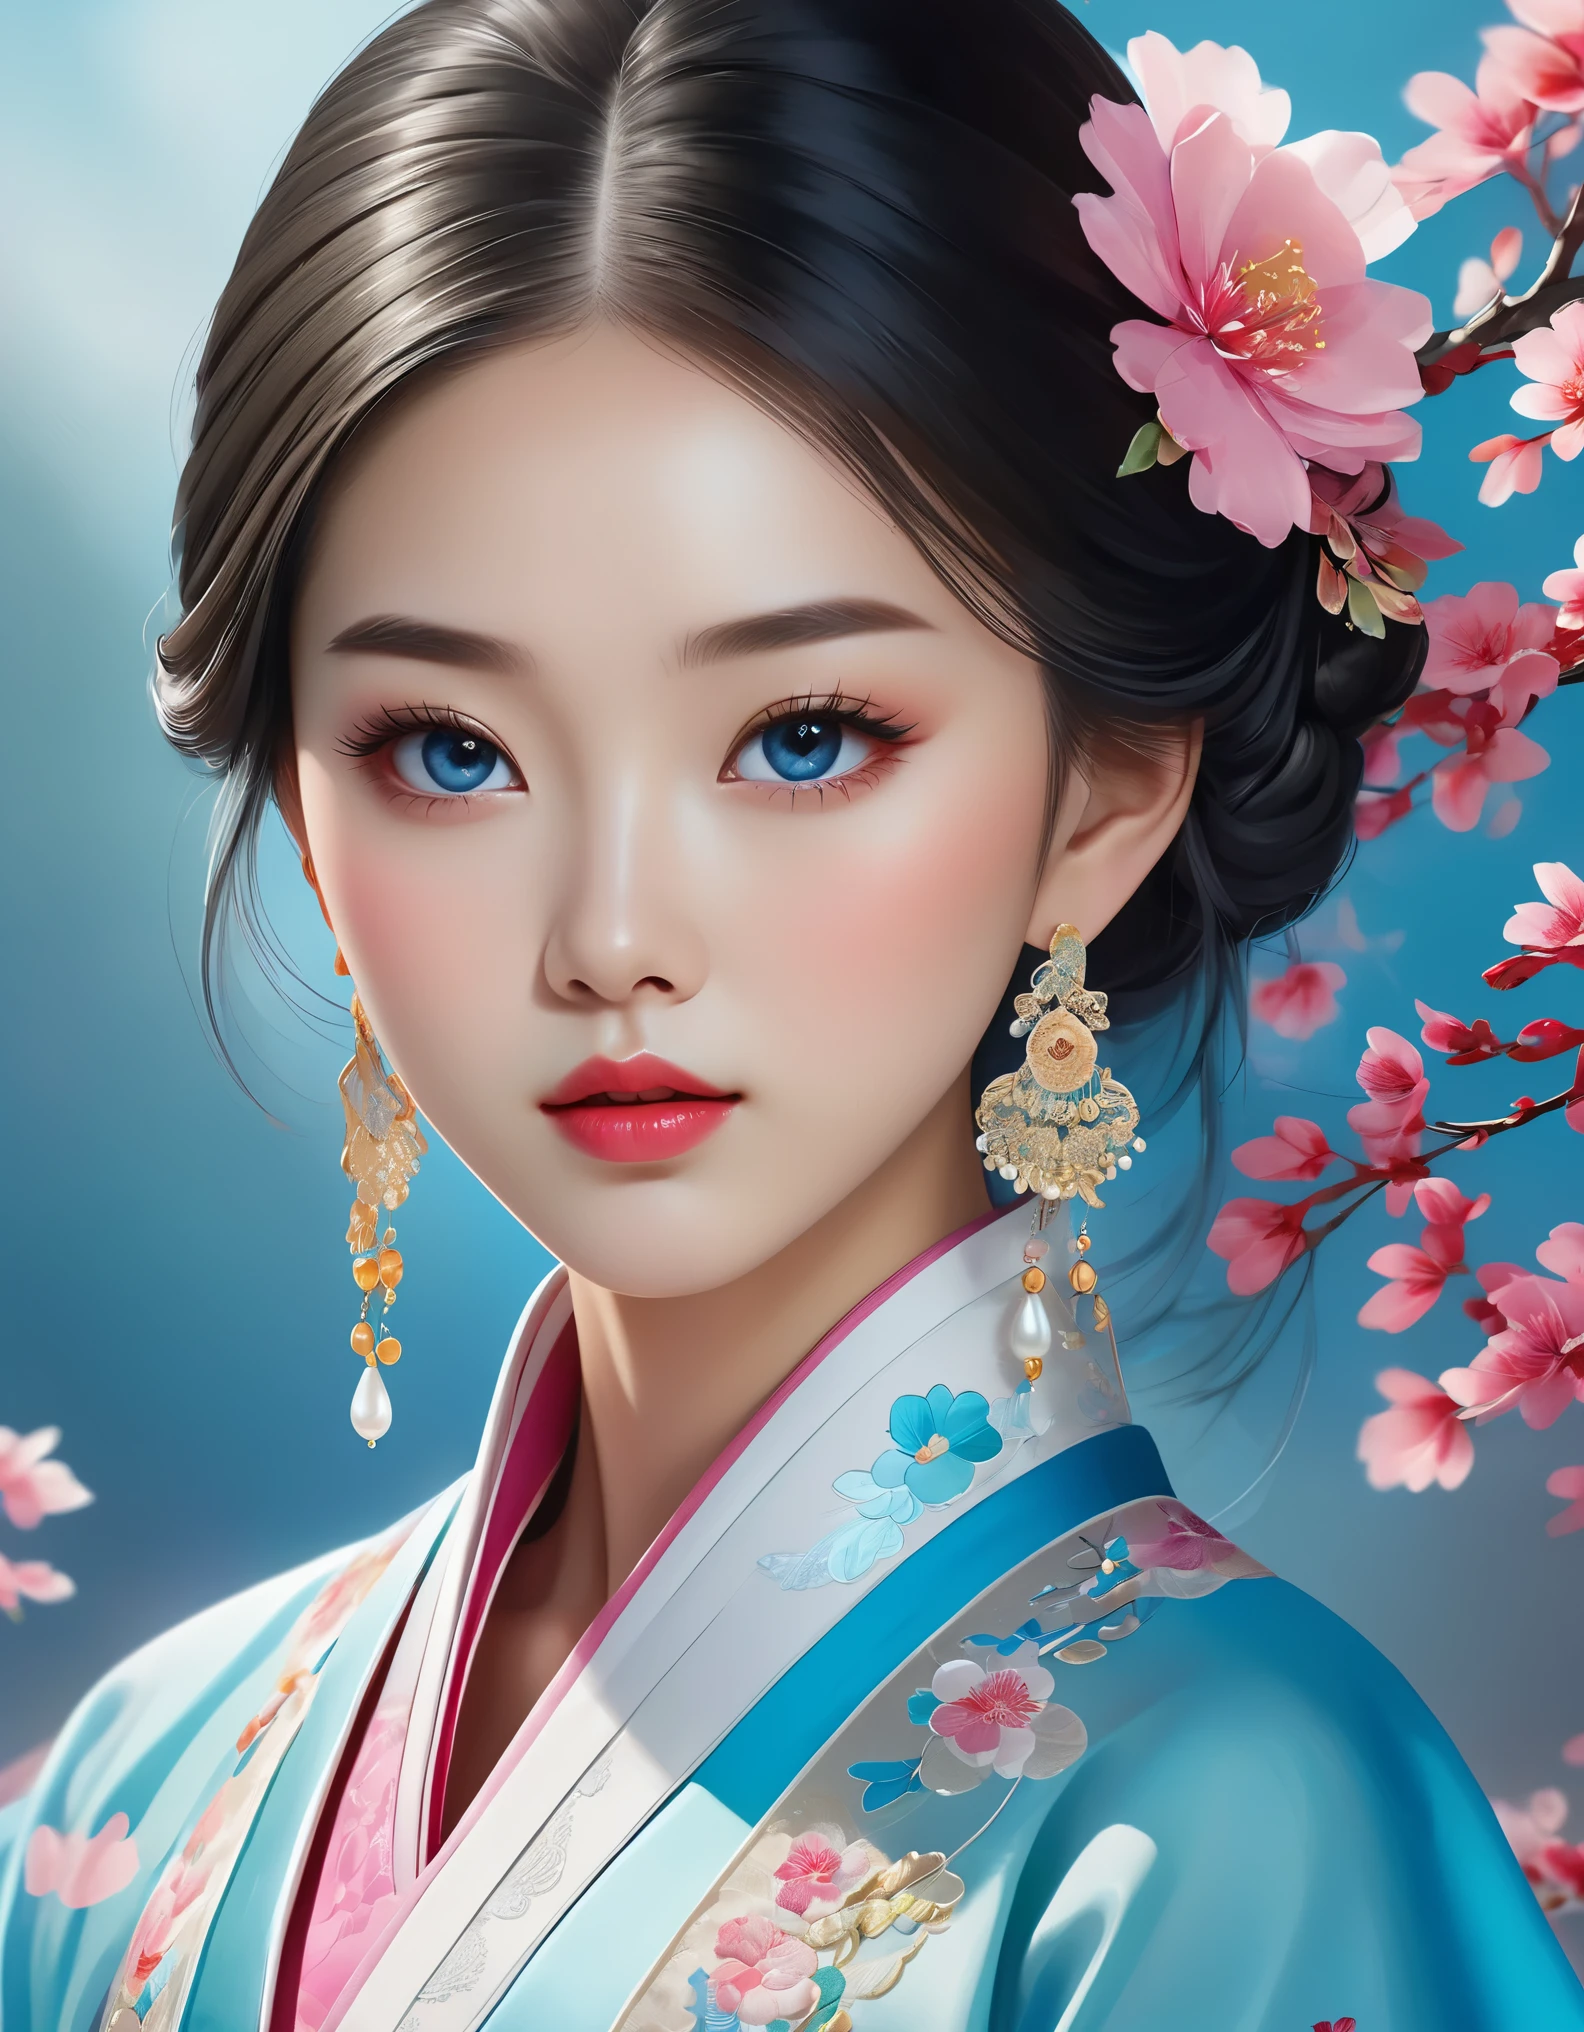 아름다운 중국 소녀의 얼굴을 휘날리는 베일이 덮고 있다, 진주 귀걸이, 긴 속눈썹과 분홍빛 입술, 얼굴 클로즈업, 깨끗한 얼굴, 둥근 턱, 파란 눈, 자수가 들어간 파란색 한복, 흰 바탕.
그래픽 일러스트레이션, 3D 렌더링, 밝은 색상과 섬세한 디테일, 일러스트 포스터로, 2D 게임 아트 스타일, 색상 보정, HD, 32,000 ,사적인